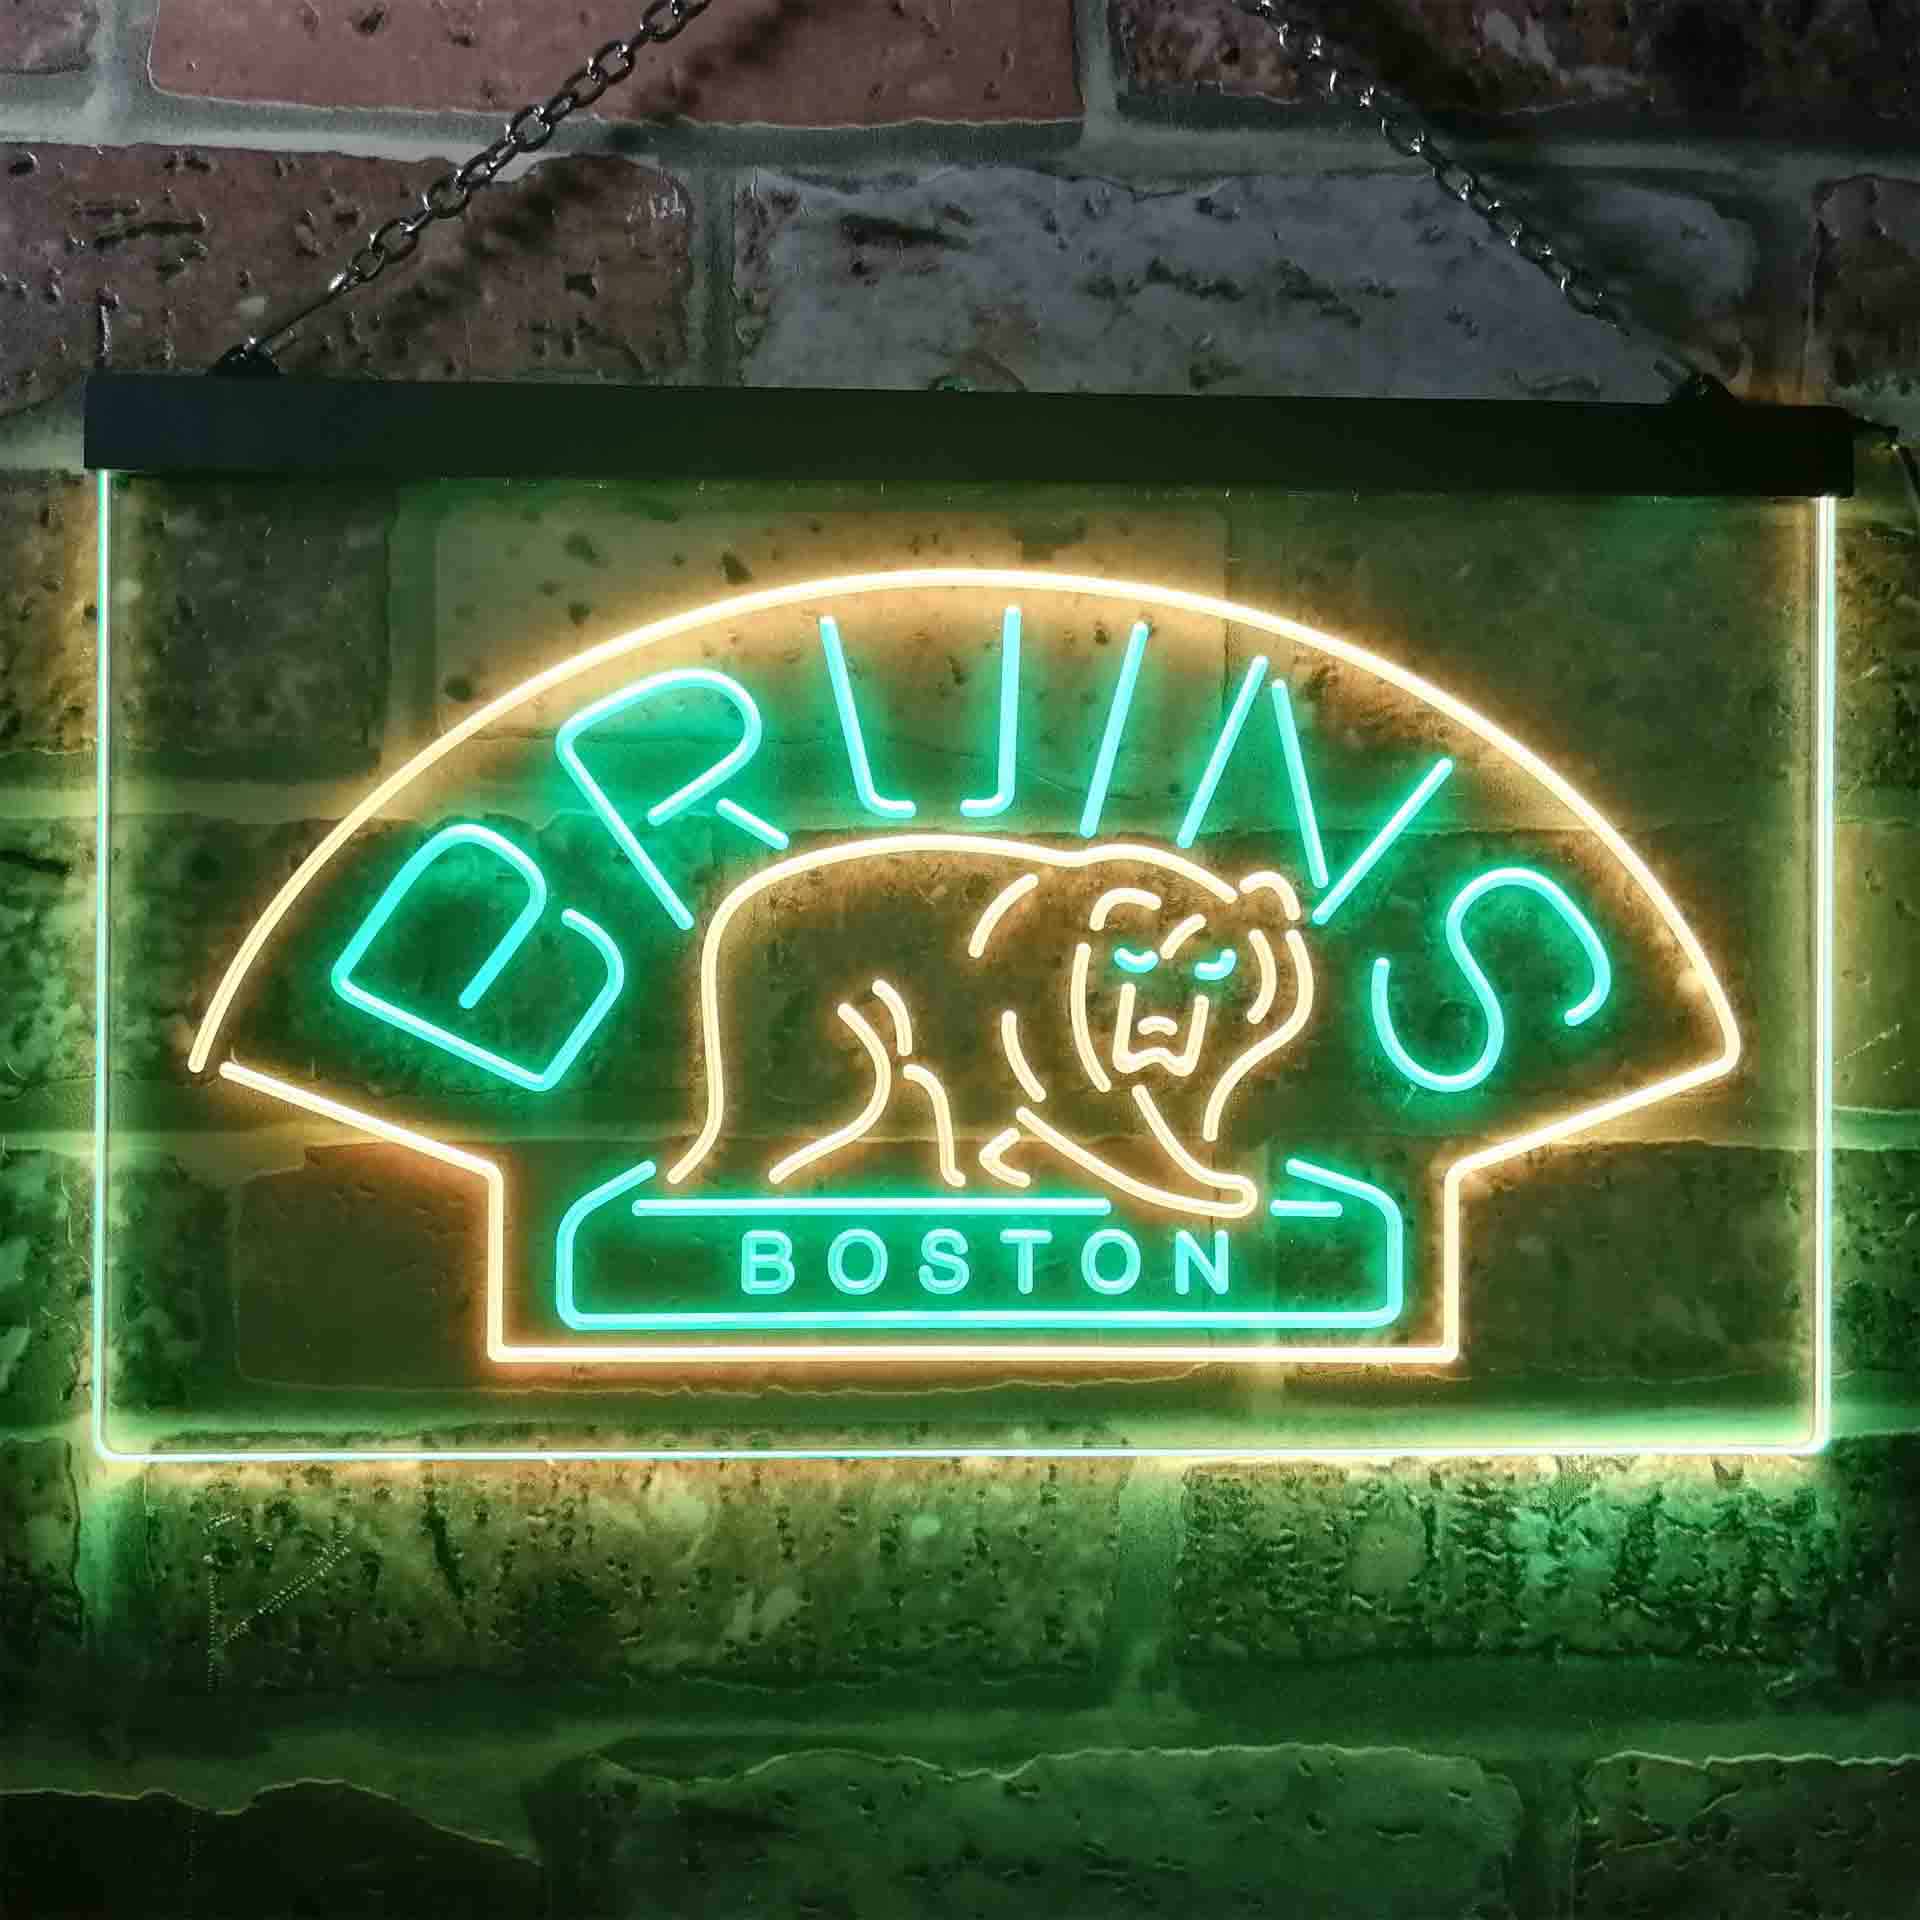 Boston Sport Team Bruins League Club LED Neon Sign